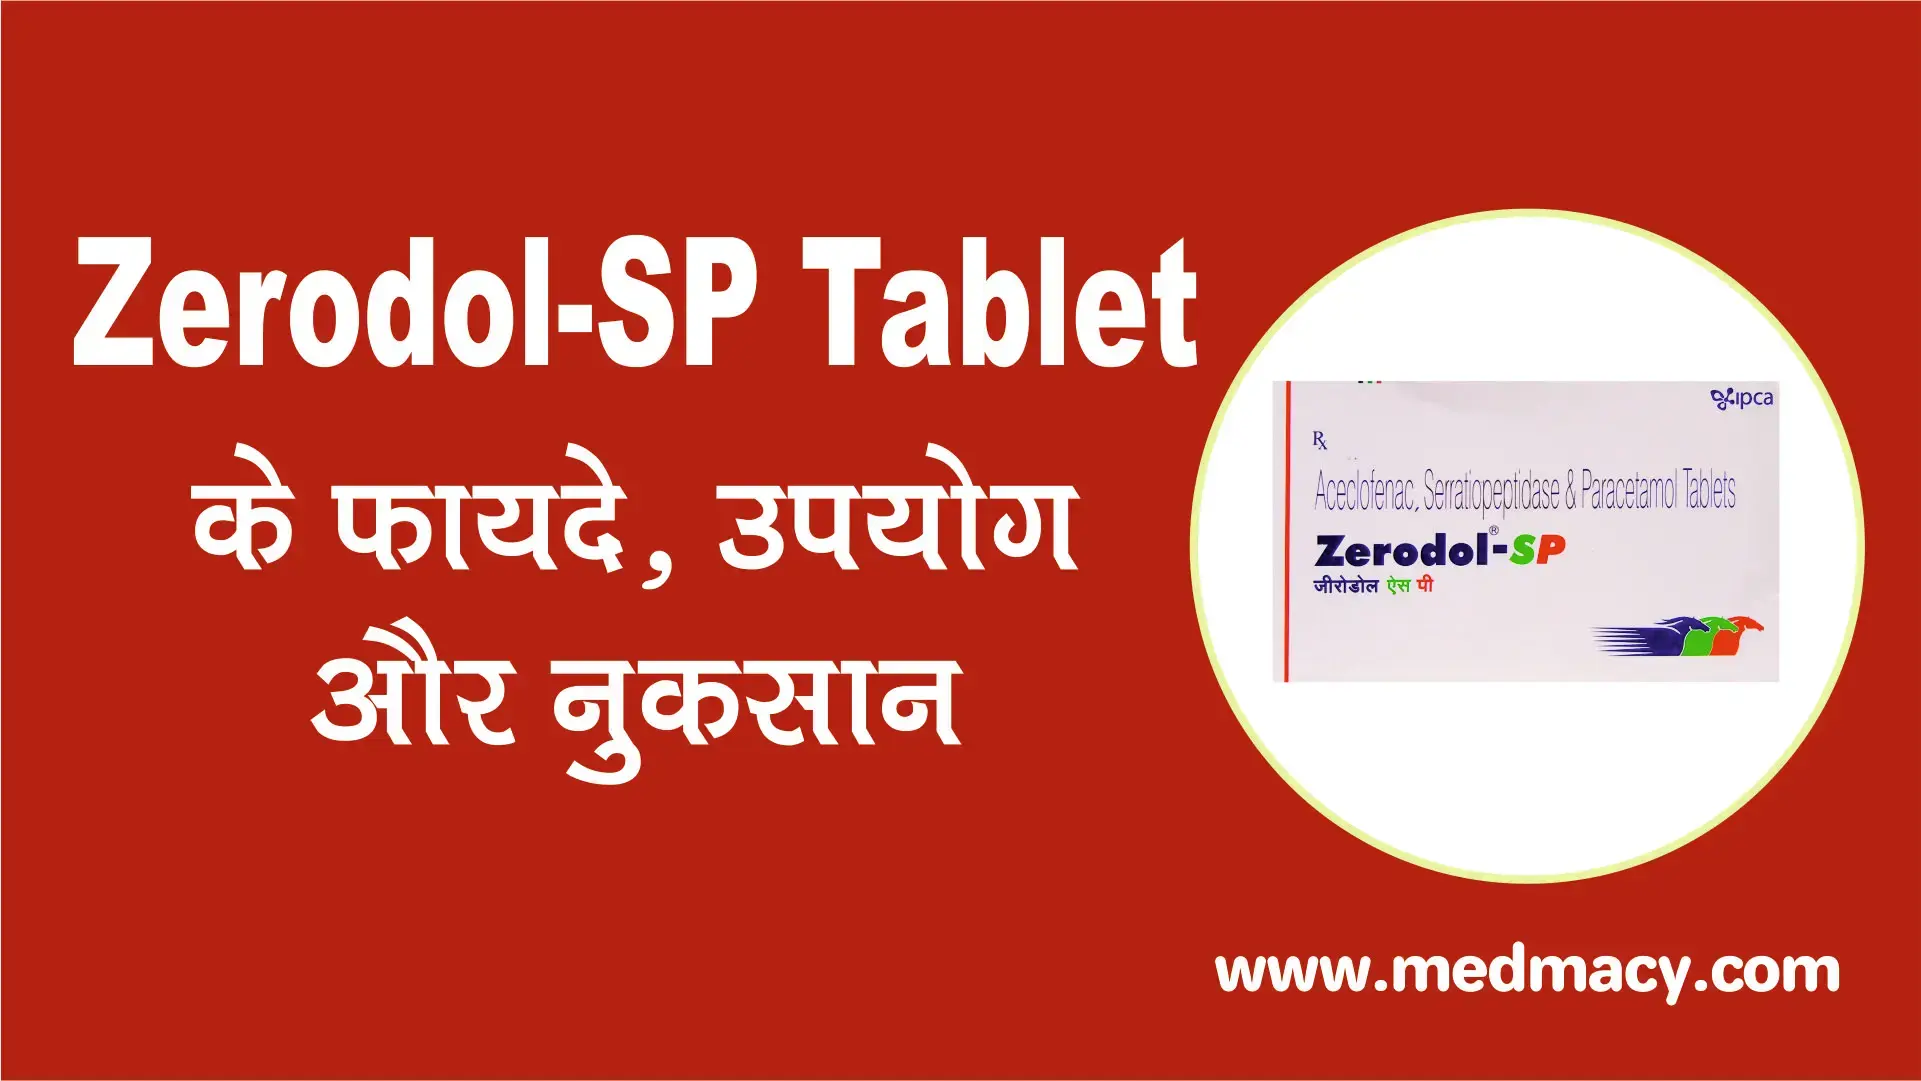 zerodol sp tablet uses in hindi